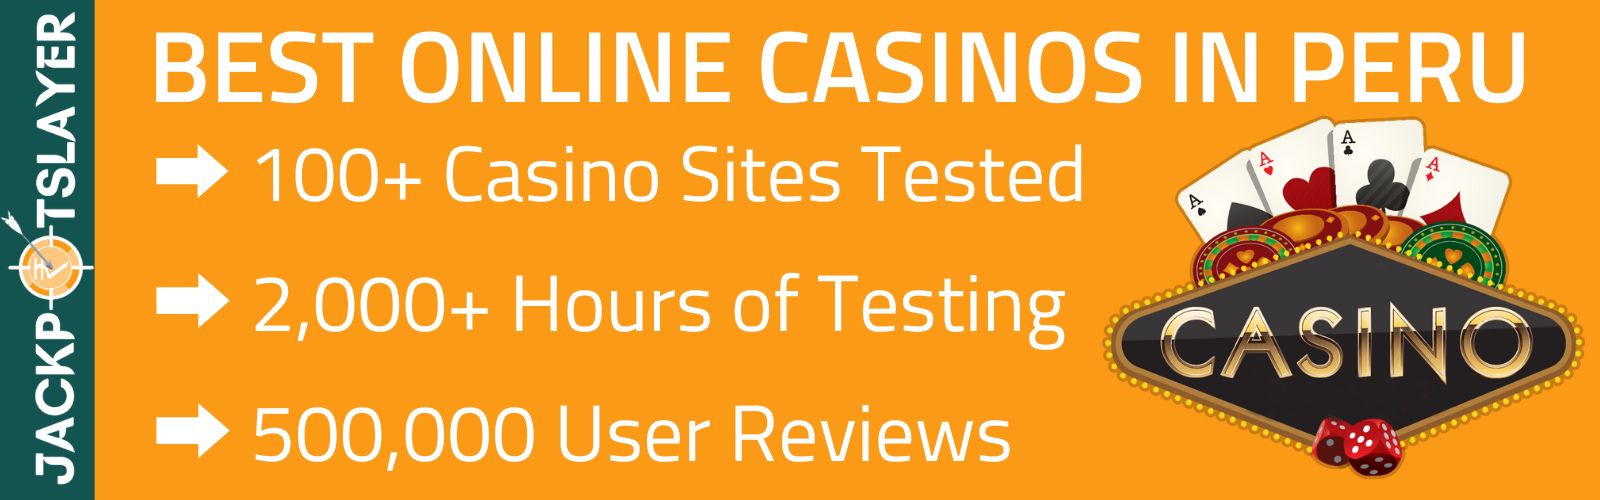 Online Casinos Peru